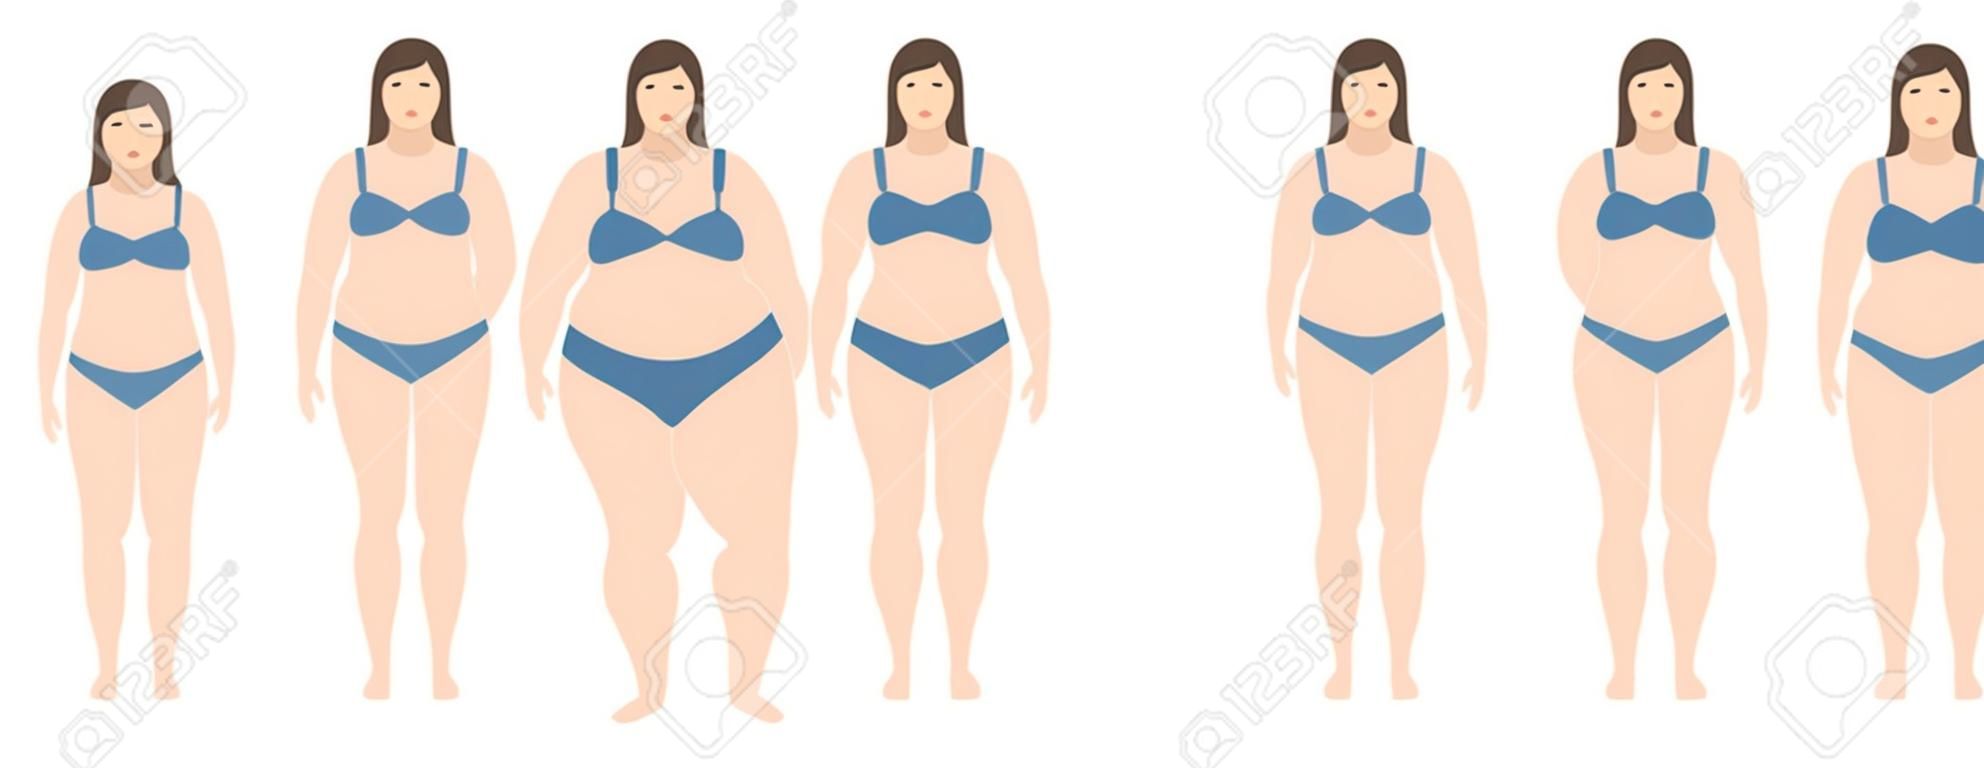 Eine Vektorillustration von Frauen mit unterschiedlichem Gewicht von Magersucht bis extrem fettleibig. Body Mass Index, Gewichtsverlust Konzept.